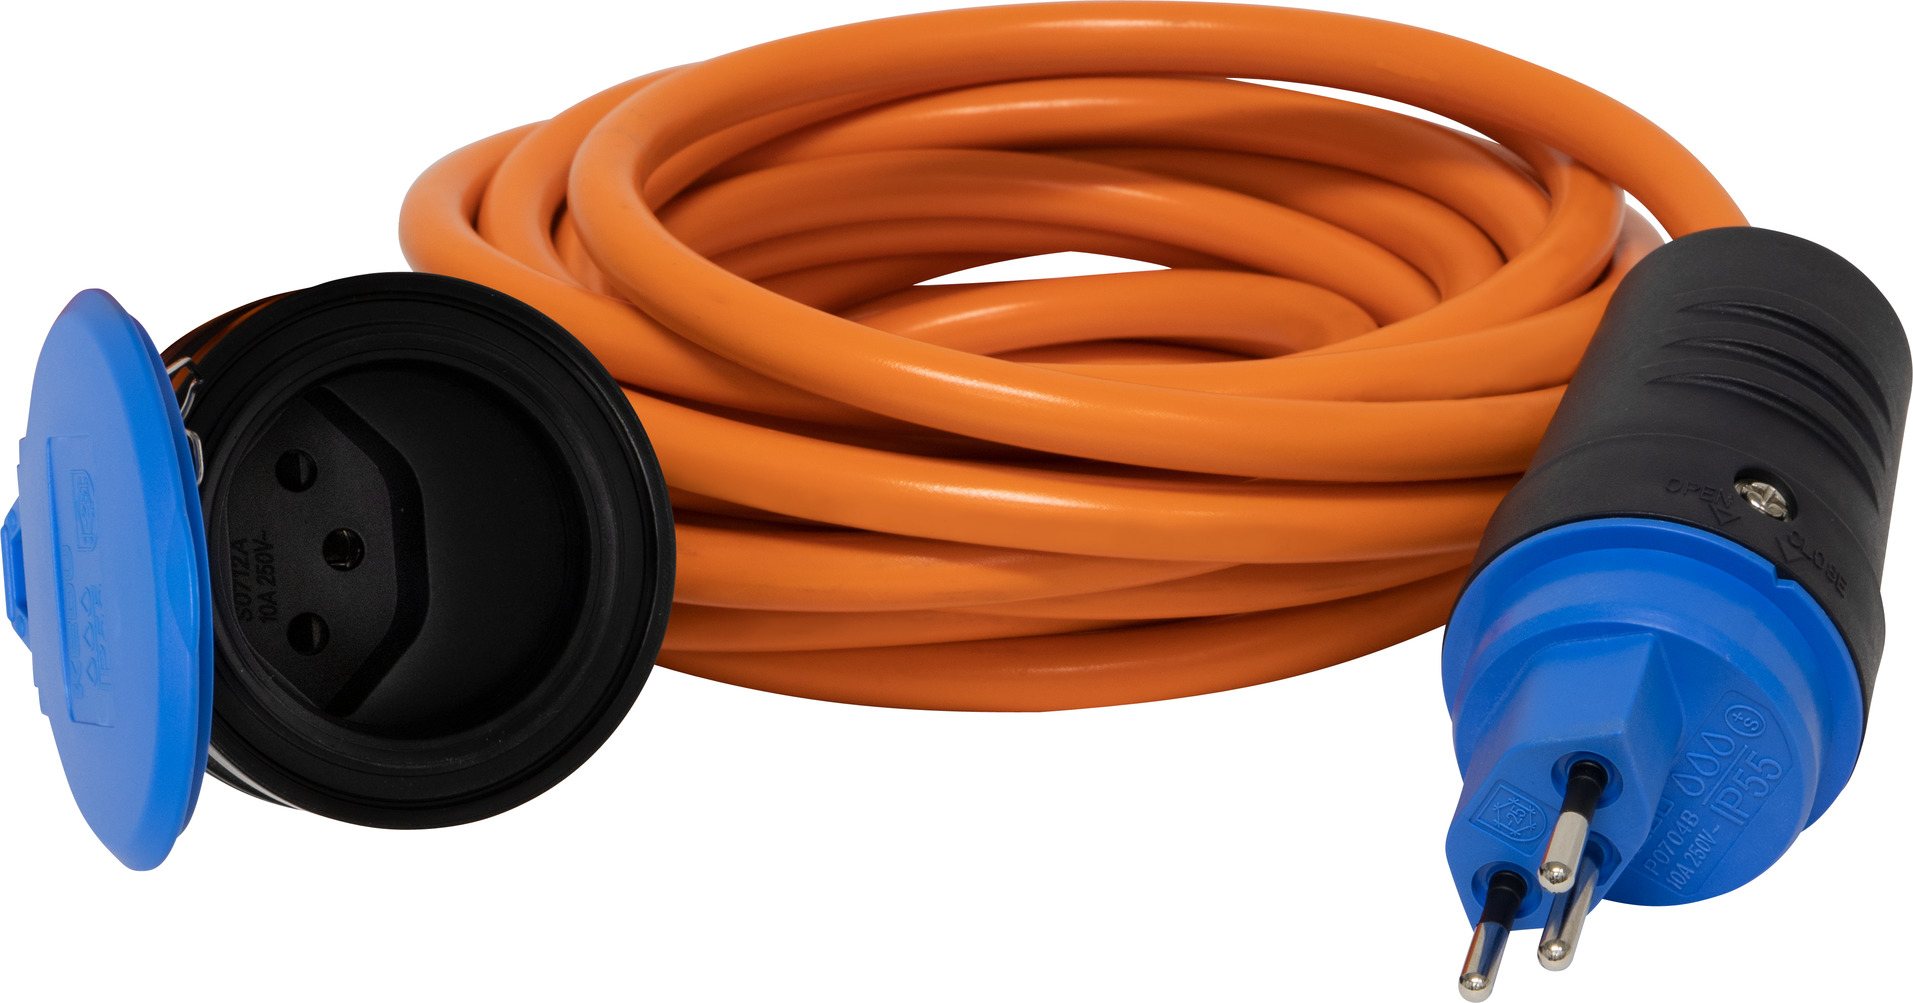 Verlängerungskabel T13-T12 1 m Schwarz - Kabel ⋅ Adapter